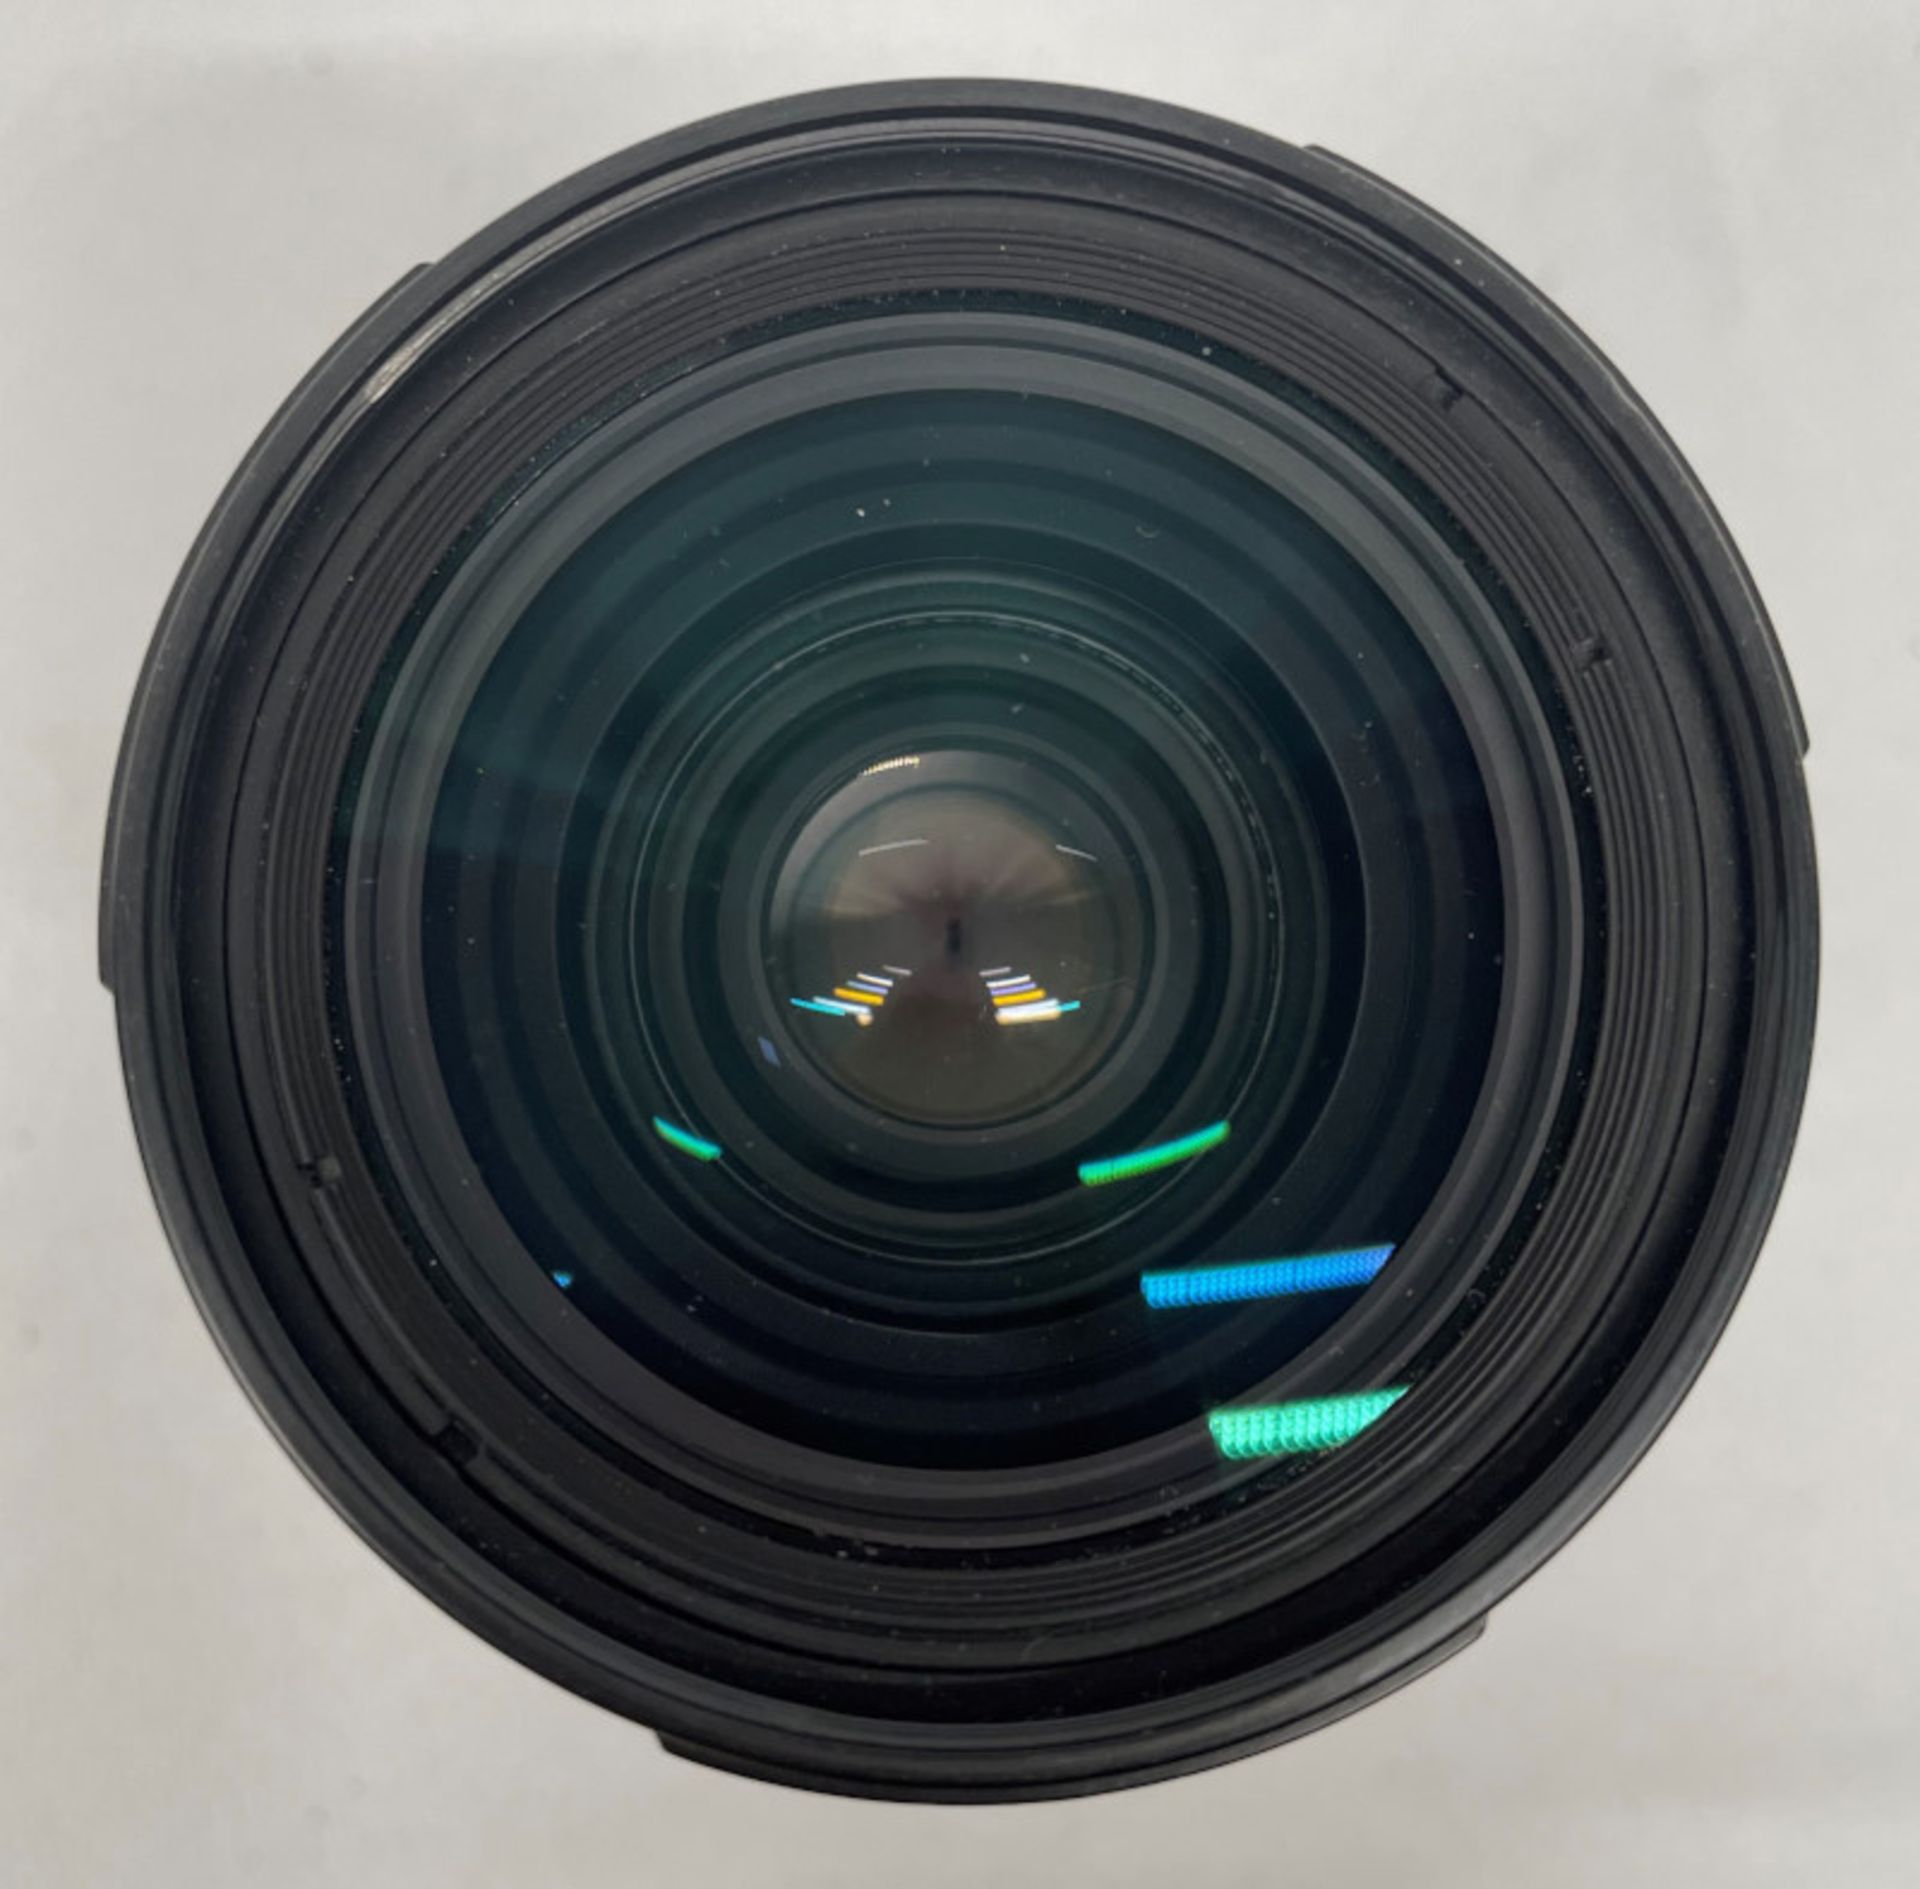 Nikon AF Nikkor 28-85mm - 1:3.5-4.5 Lens - Serial No. 3127729 with HOYA 62mm UV(O) Filter - Image 4 of 7